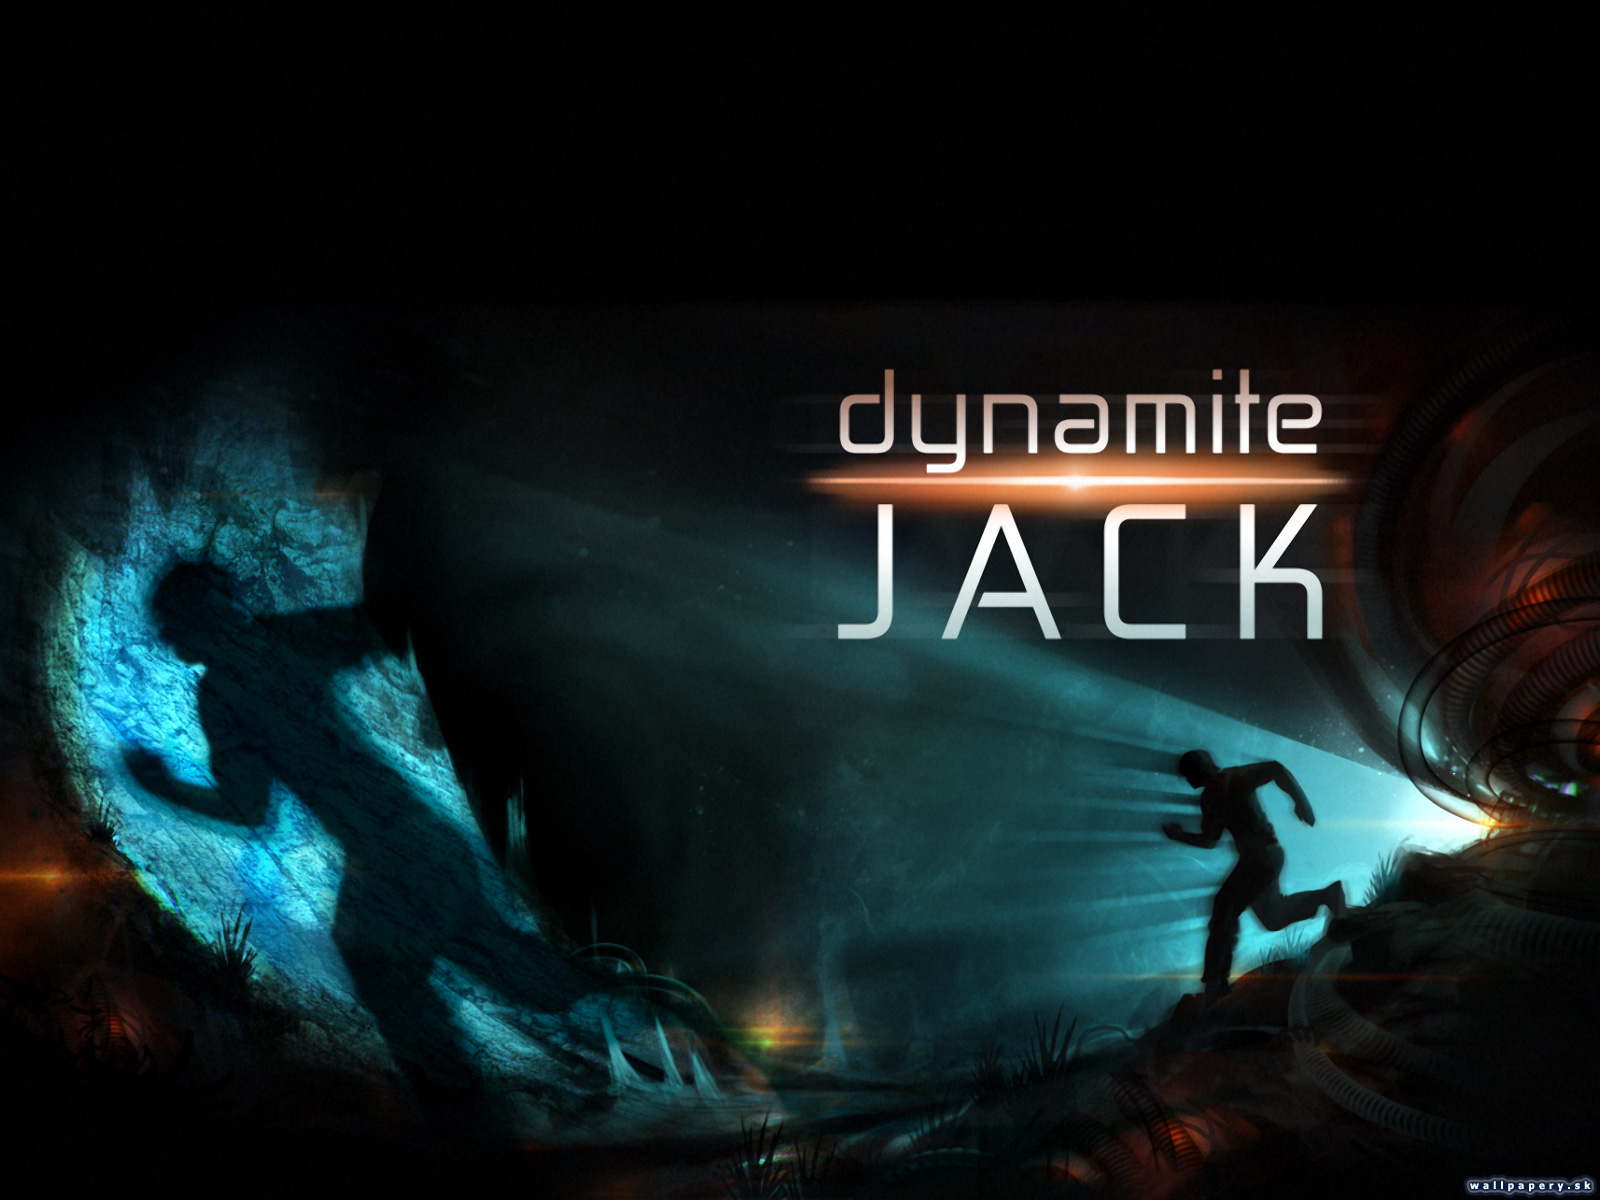 Dynamite Jack - wallpaper 1